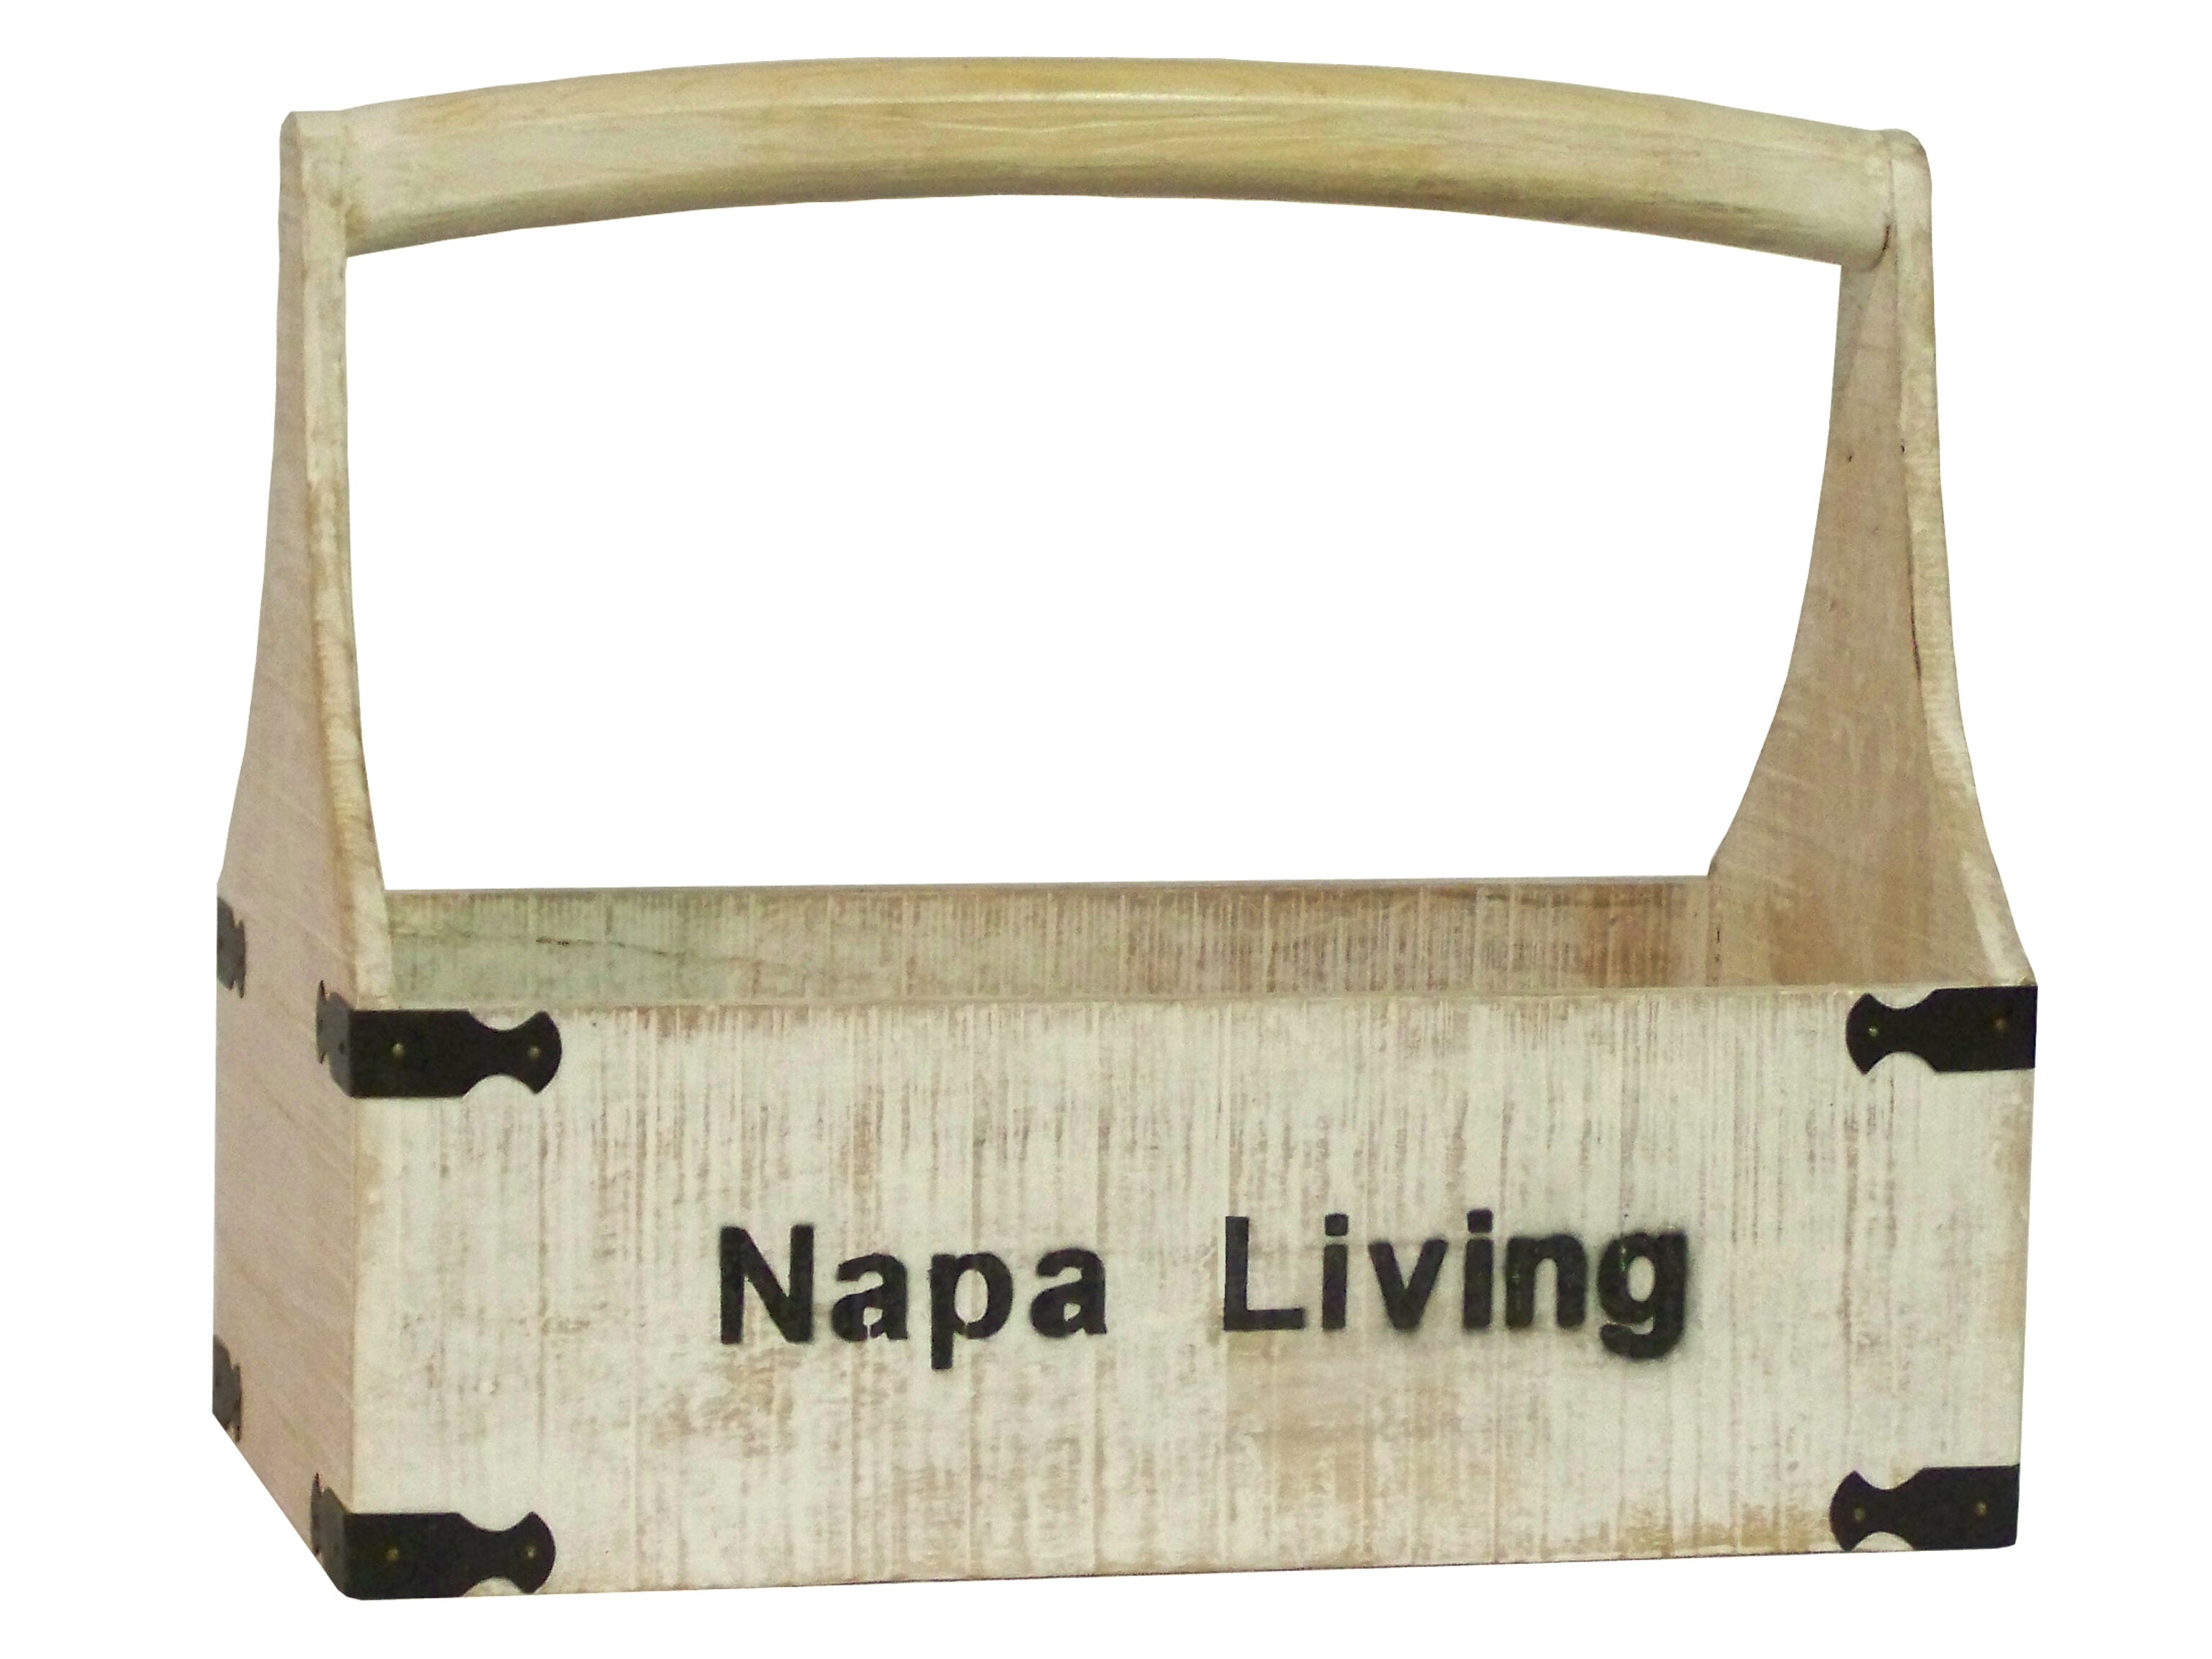 Antique Revival Napa Living Wooden Tool Box